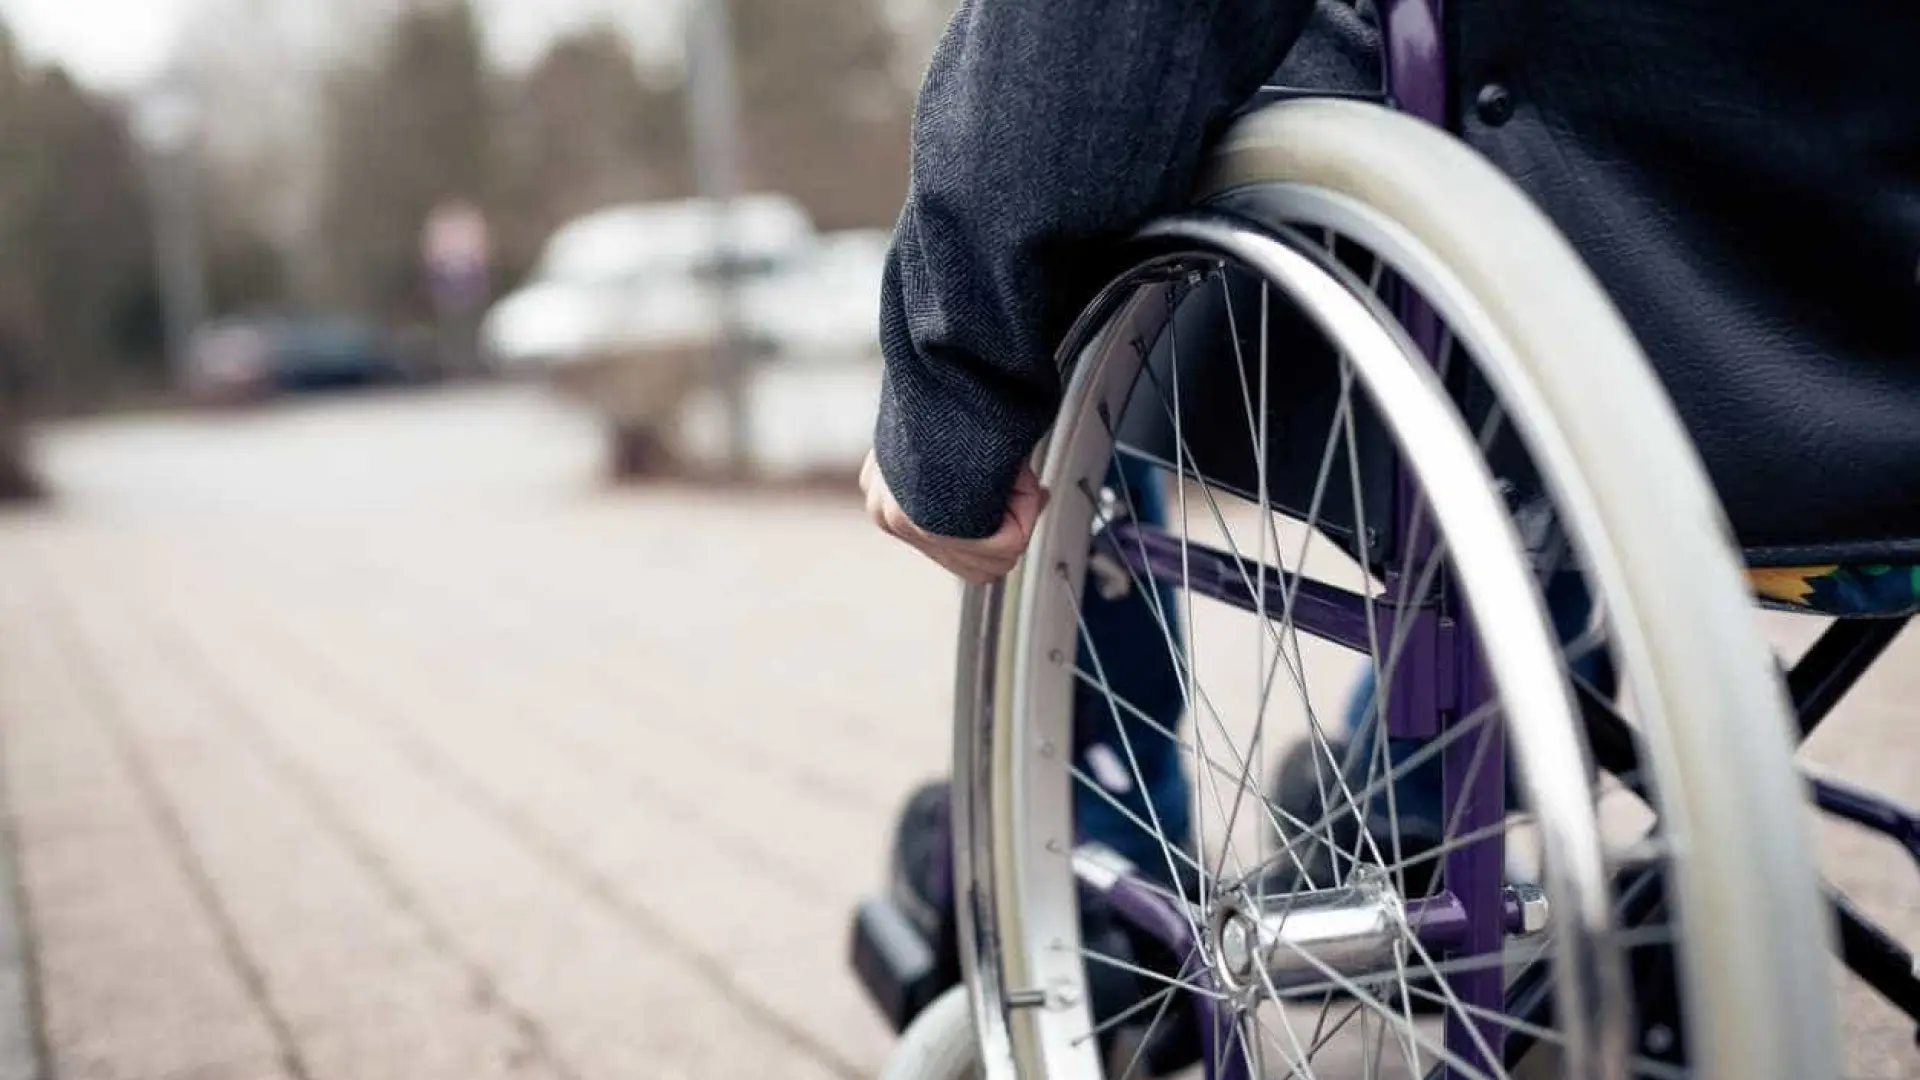 Бесплатные подъемники для инвалидов: как получить | ООО "ГРАНДМЕТАЛ-СЕРВИС"